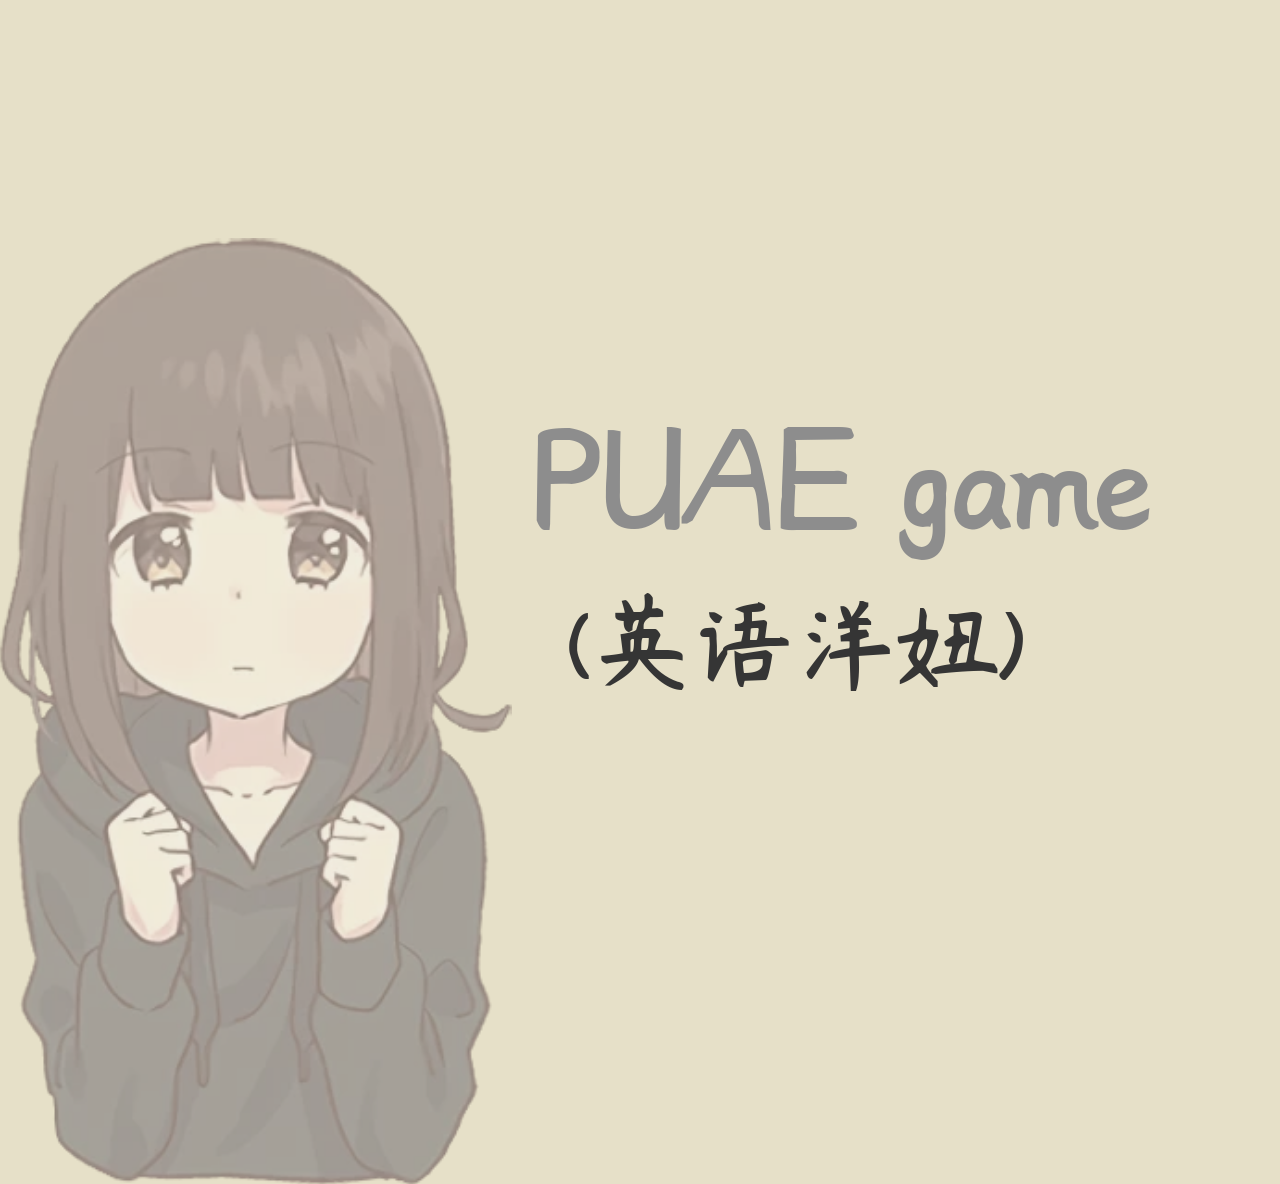 【精品】瑞恩《PUAE game(英语洋妞)》感受不同的欢喜和爱-一条芦苇